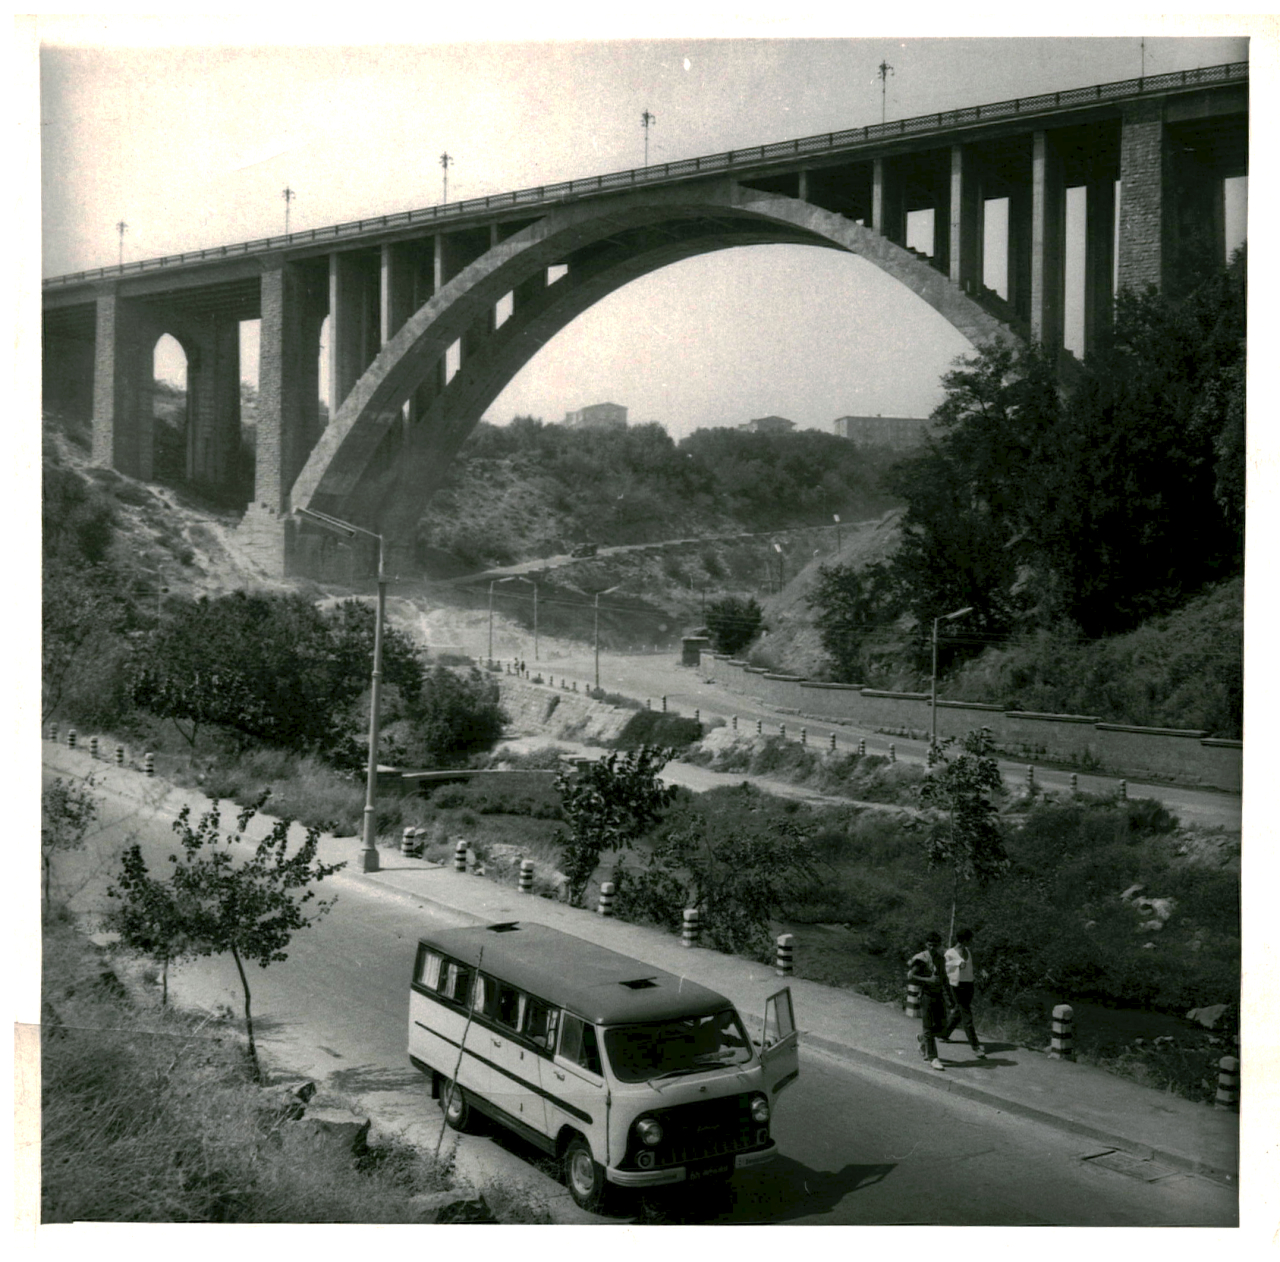 Հրազդանի մեծ կամուրջը, 1956թ. (Կիևյան կամուրջ)